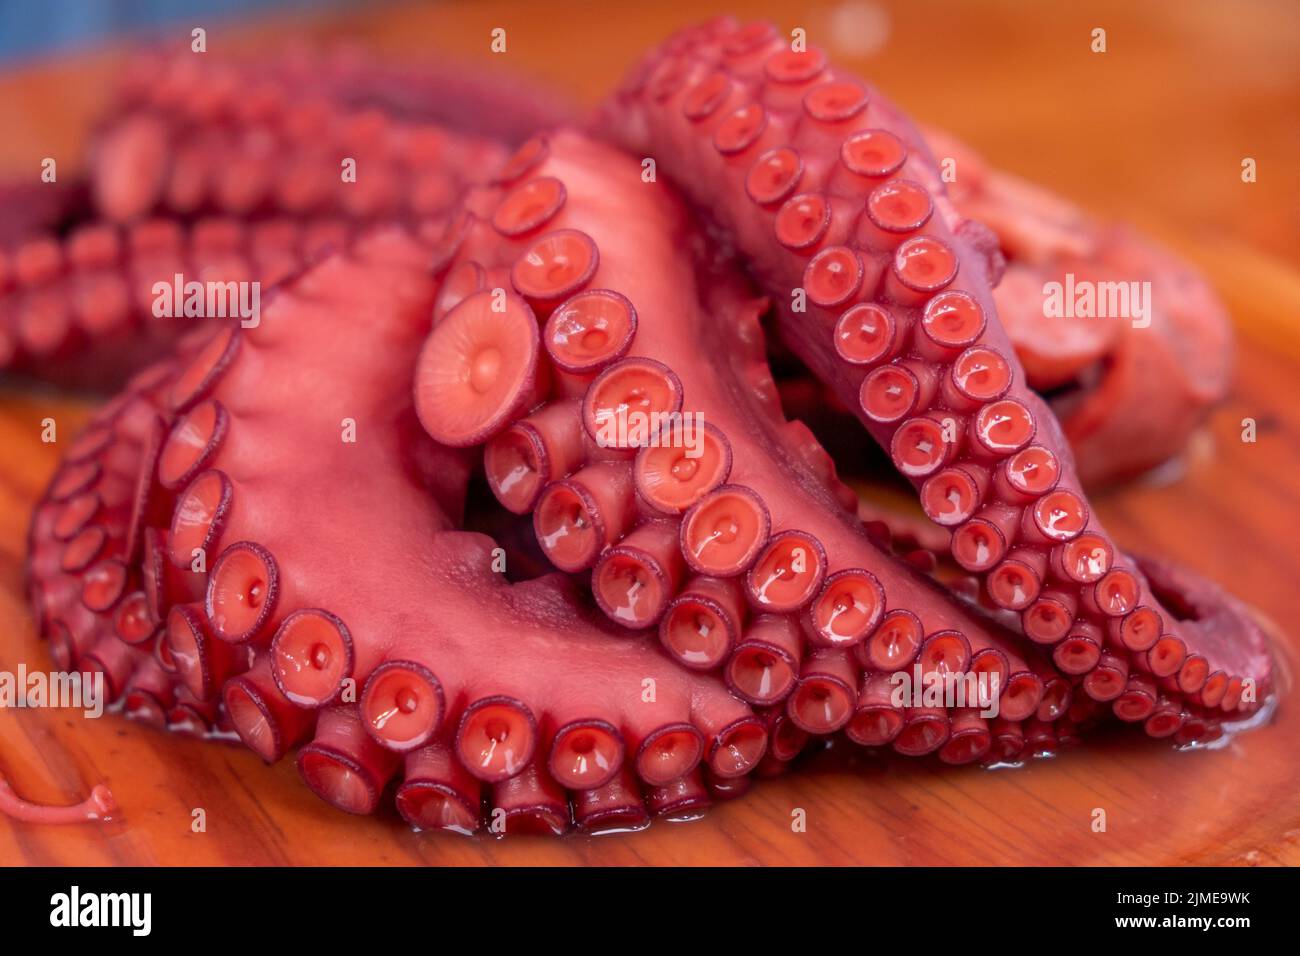 Les tentacules d'octopus ont préparé une recette traditionnelle galicienne de style feira. Pulpo à feira. Espagne. Banque D'Images